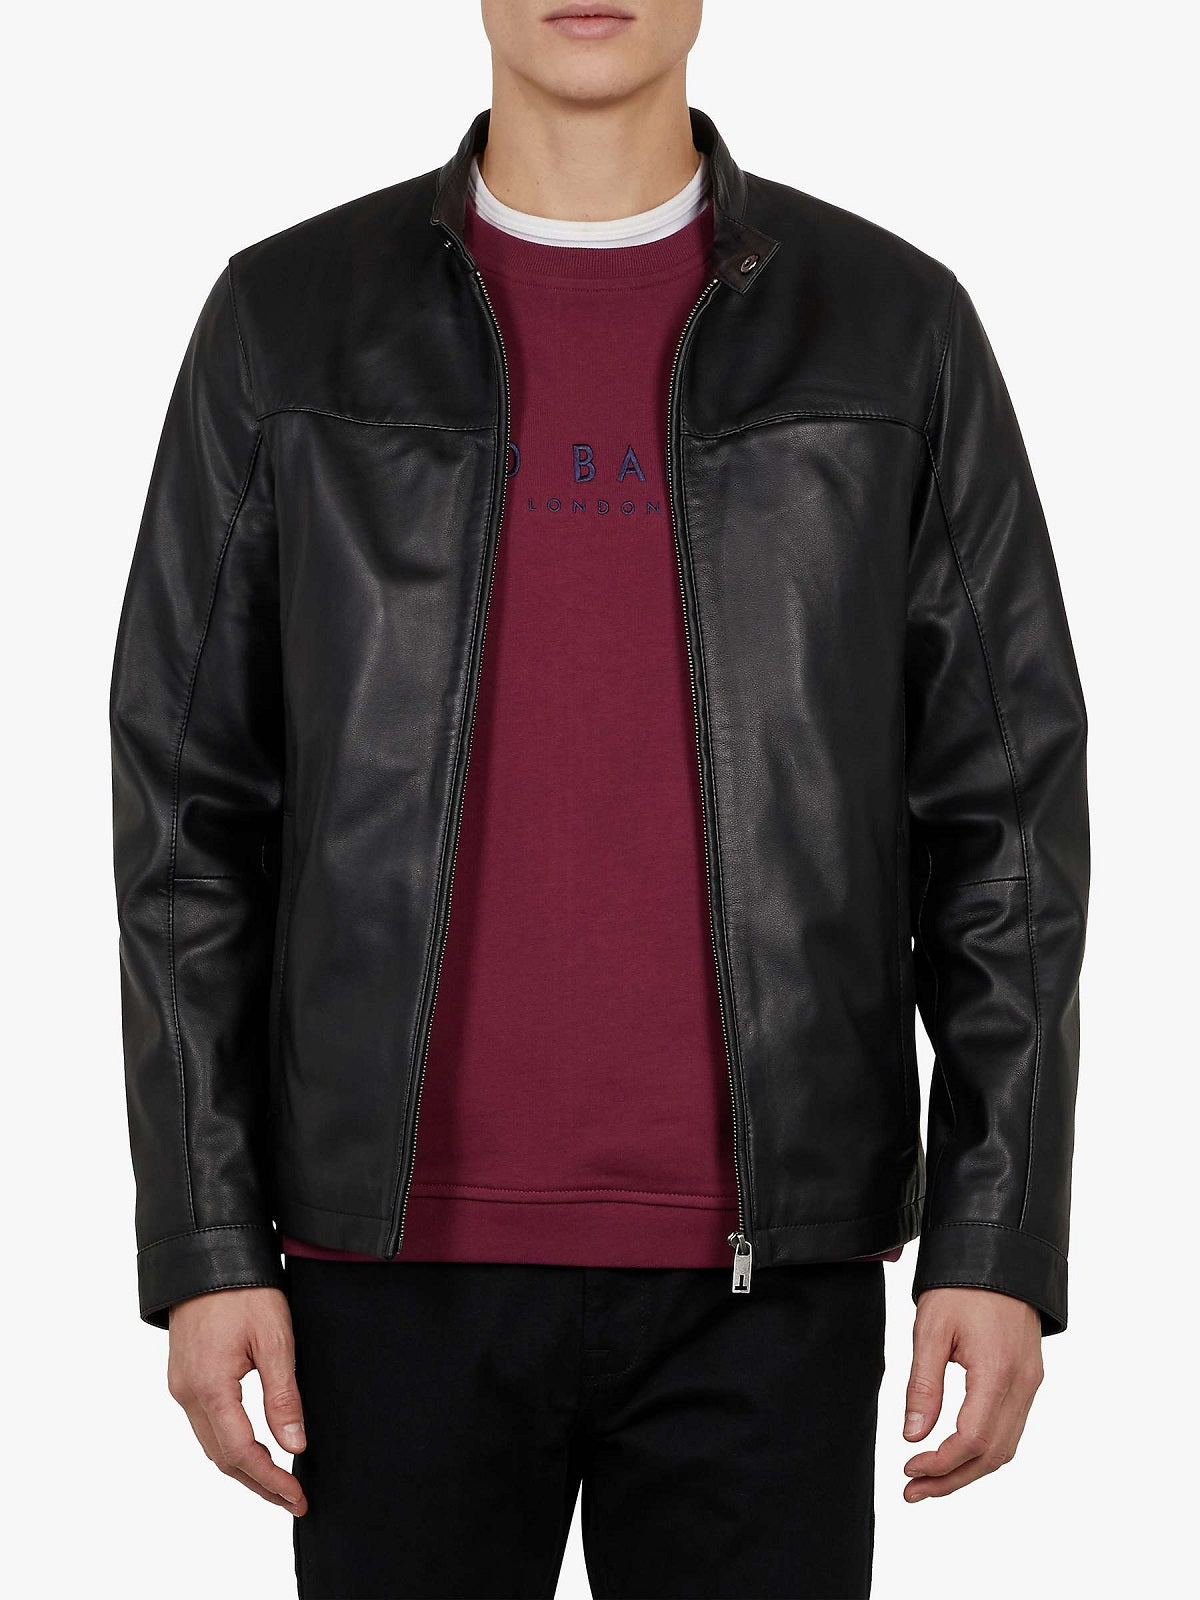 Men's Modish Black Leather Jacket